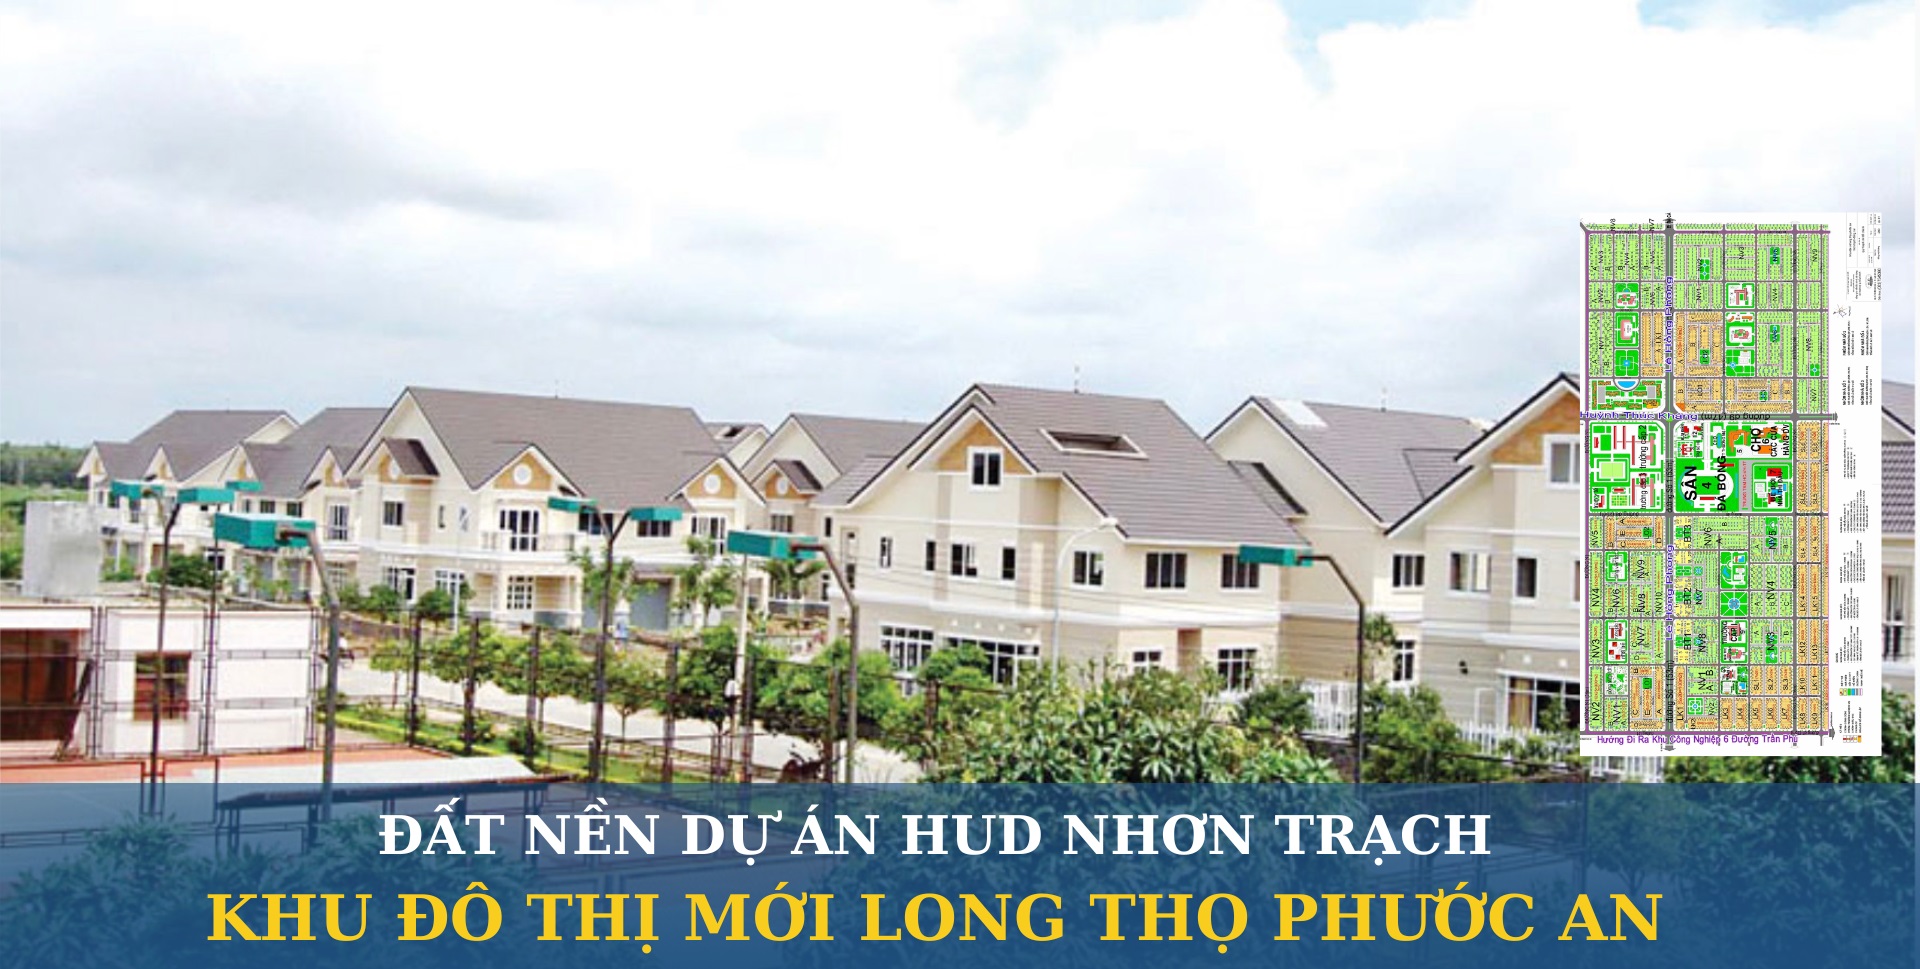 Saigonland Nhơn Trạch - Cần mua đất nền dự án Hud và Xây Dựng Hà Nội Nhơn Trạch Đồng Nai - Ảnh 3